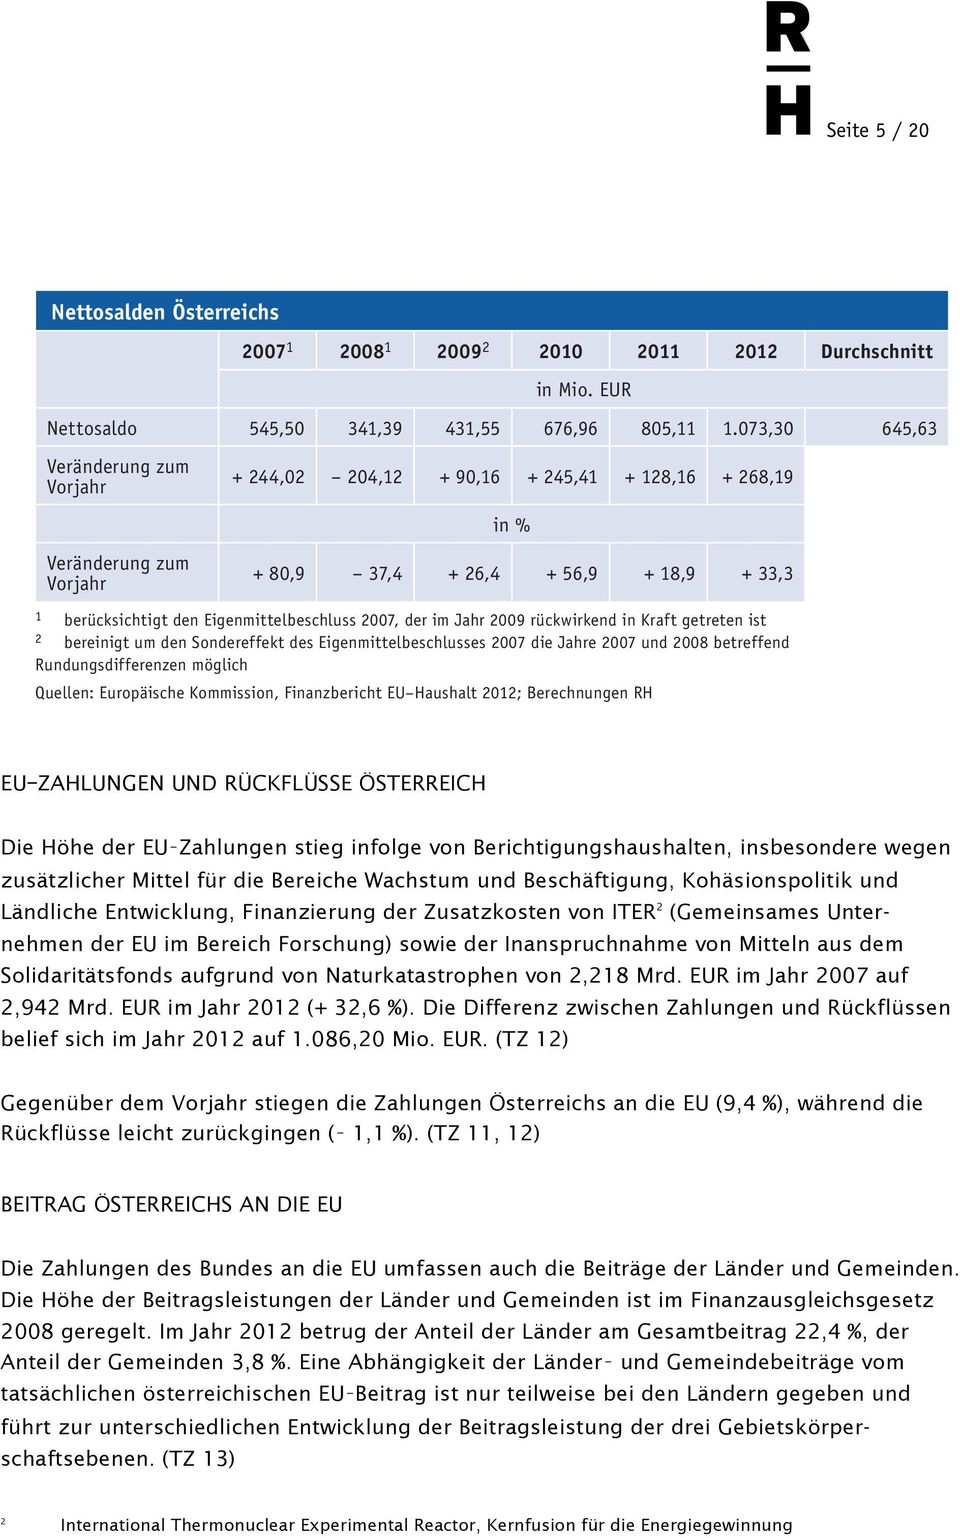 EUR, im Jahr 2010 deutlich 20 auf 676,96 Mio. EUR und im Jahr 2011 weiter auf 805,11 Mio. EUR. Der Nettosaldo Öster reichs betrug im Jahr 2012 1.073,30 Mio. EUR und lag damit erstmals über 1 Mrd.